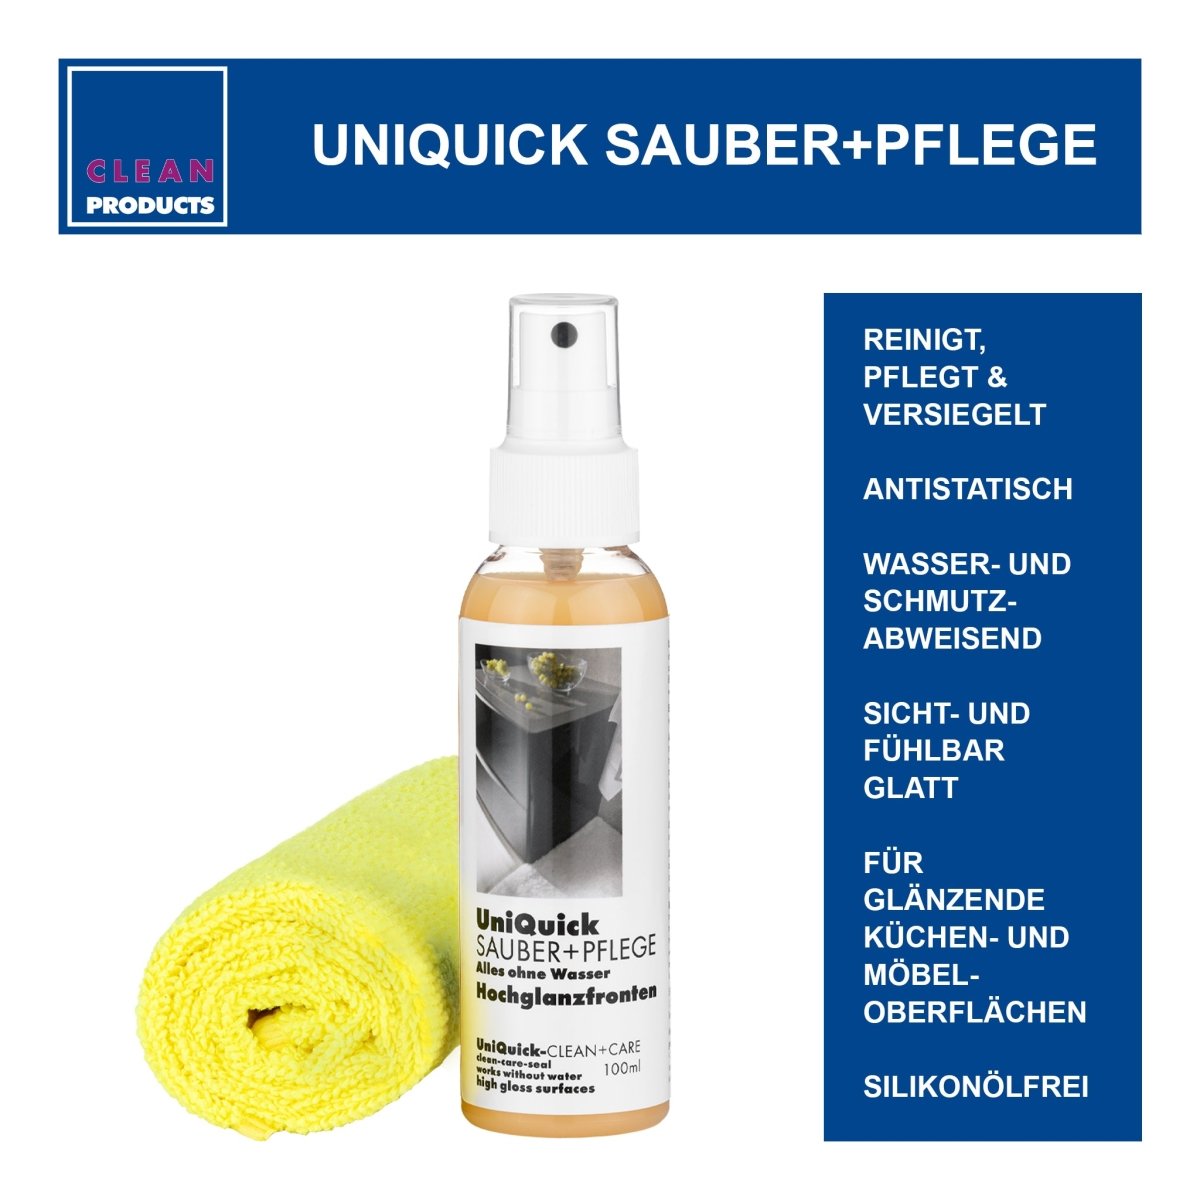 CLEANHOME UniQuick SAUBER+PFLEGE-SET für glänzende Küchen- und Möbel-Oberflächen - CLEANPRODUCTS